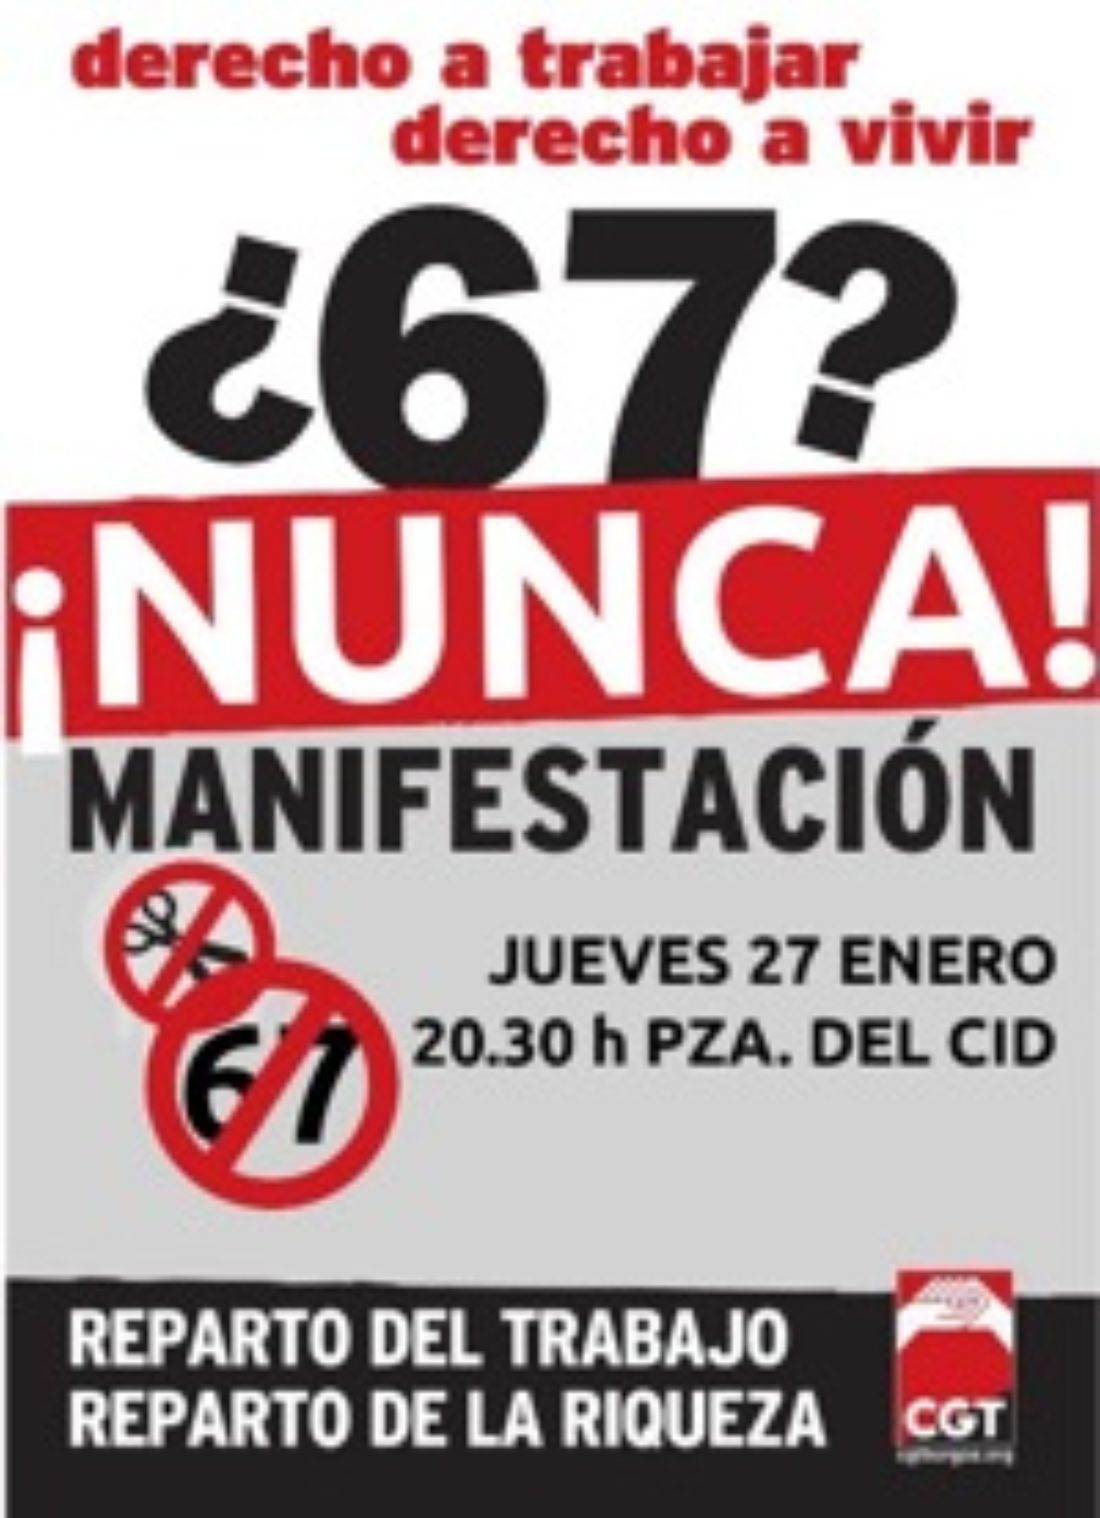 27 enero, Burgos : Manifestación contra la jubilación a los 67 años